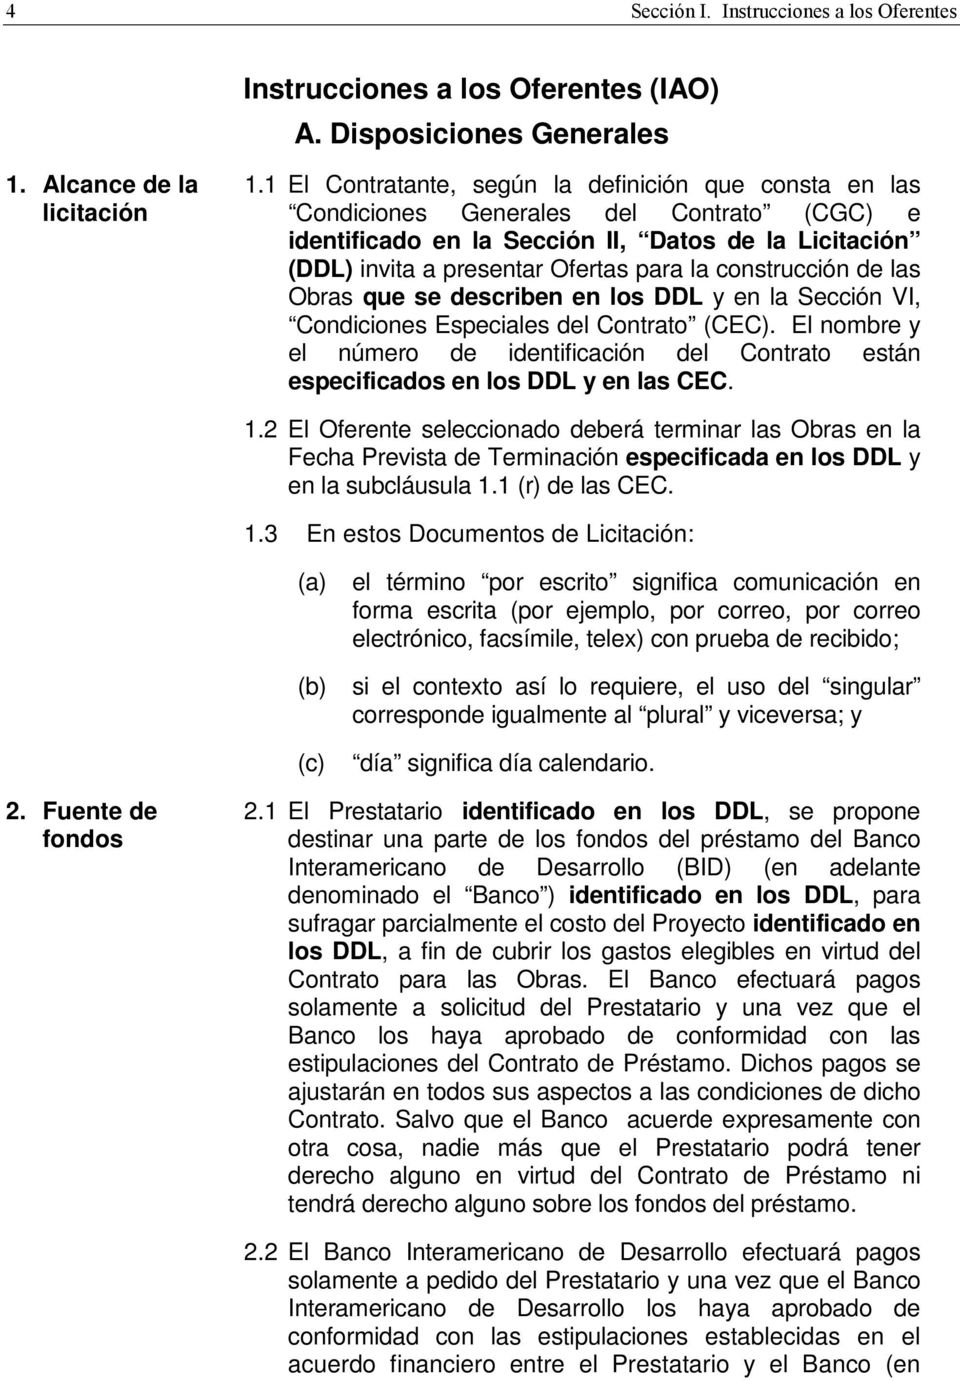 construcción de las Obras que se describen en los DDL y en la Sección VI, Condiciones Especiales del Contrato (CEC).